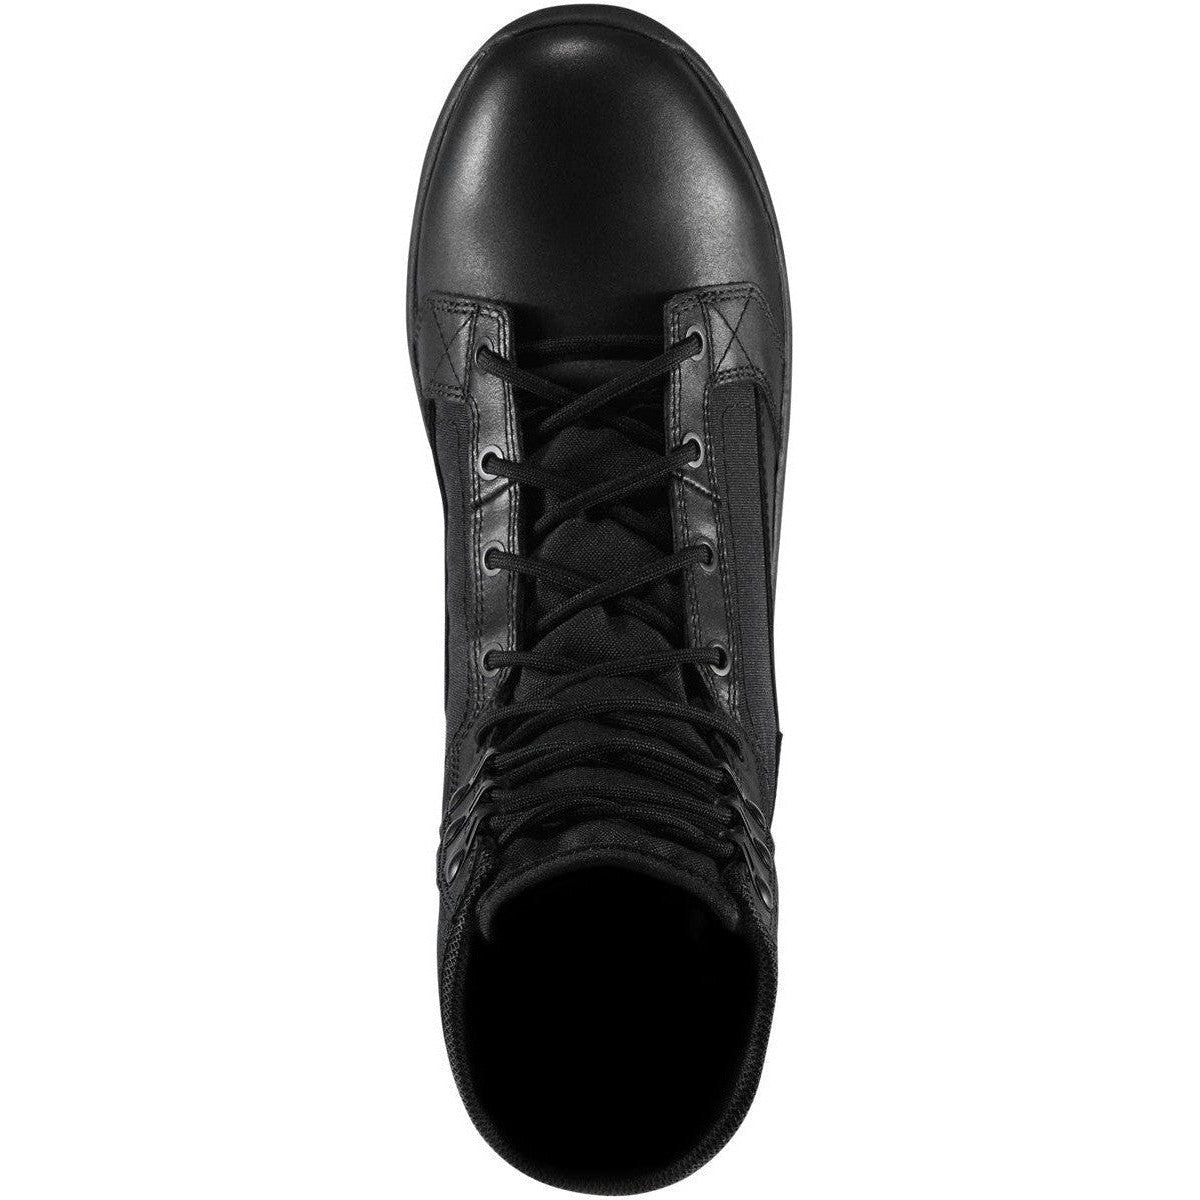 Danner Men's Tachyon 8" Duty Boot - Black - 50124  - Overlook Boots